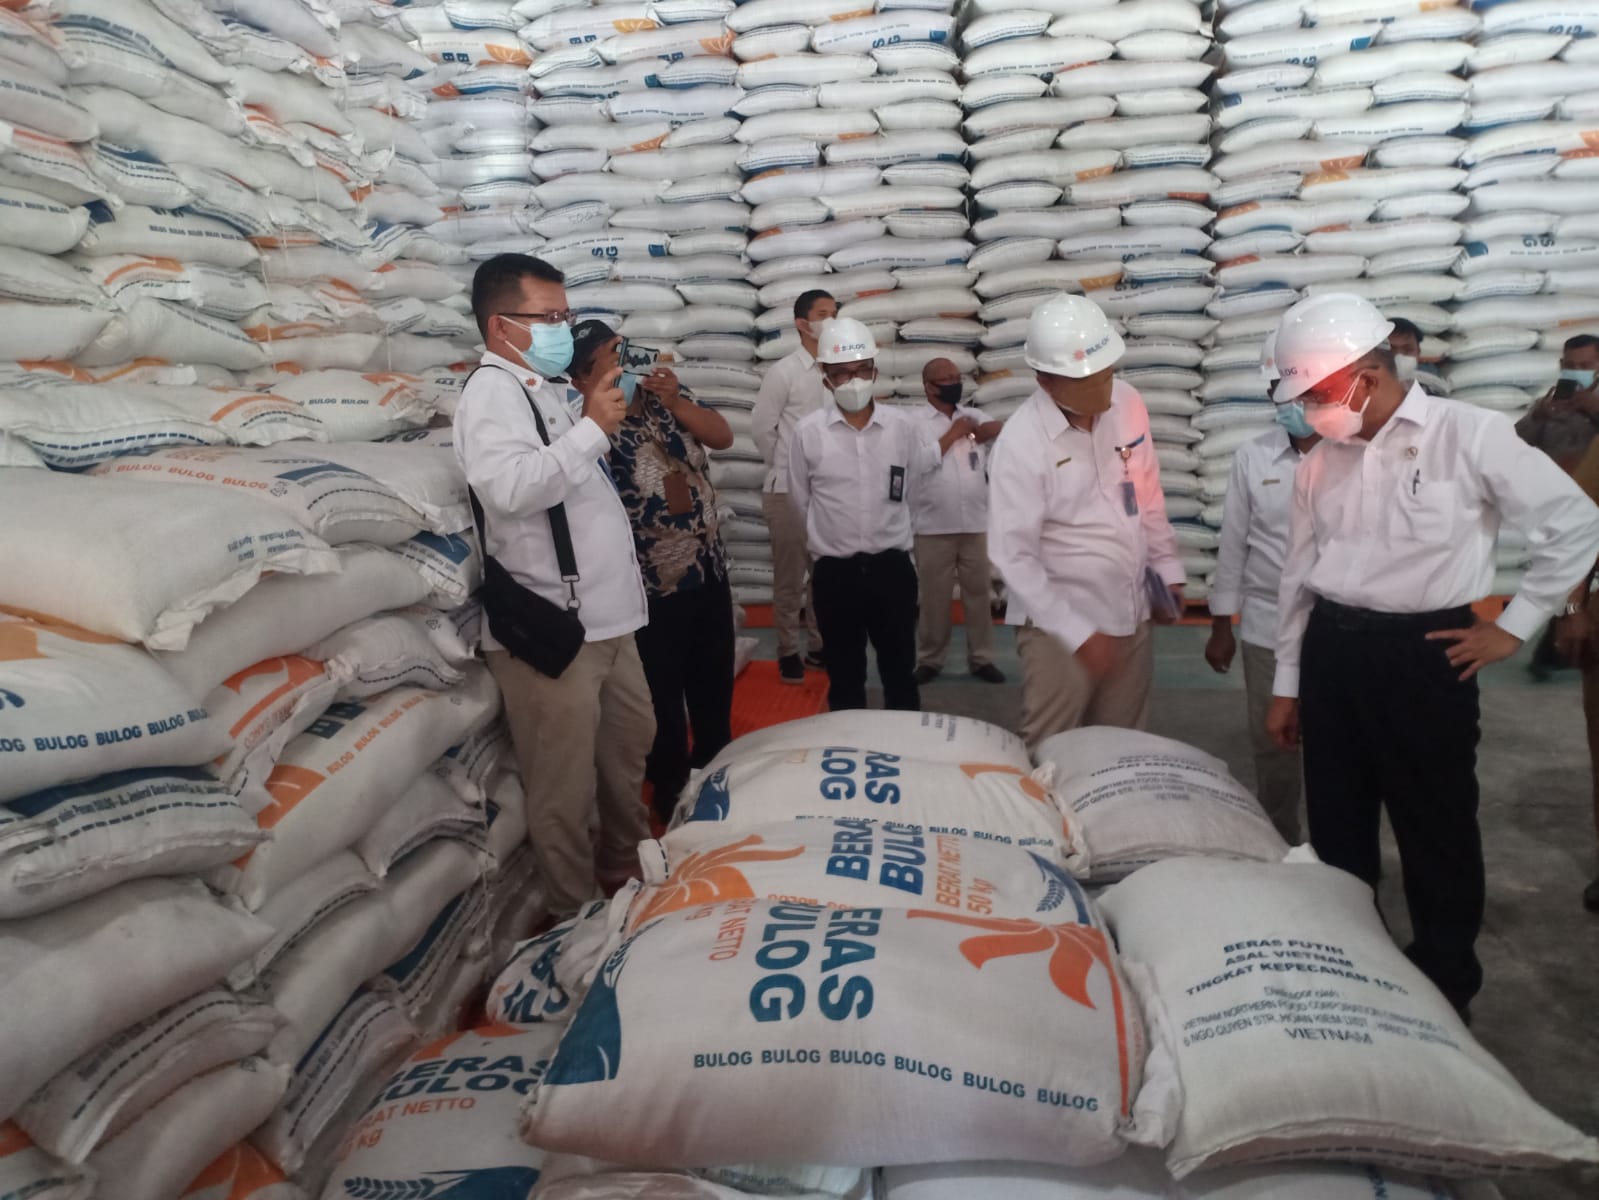 Menteri Koordinator Bidang Pembangunan Manusia dan Kebudayaan Muhadjir saat mengecek pasokan beras di Gudang Bulog Wilayah Kalimantan Timur dan Kalimantan Utara (Kaltimra), Klandasan Ilir, Kalimantan Timur, pada bulan Juli 2021